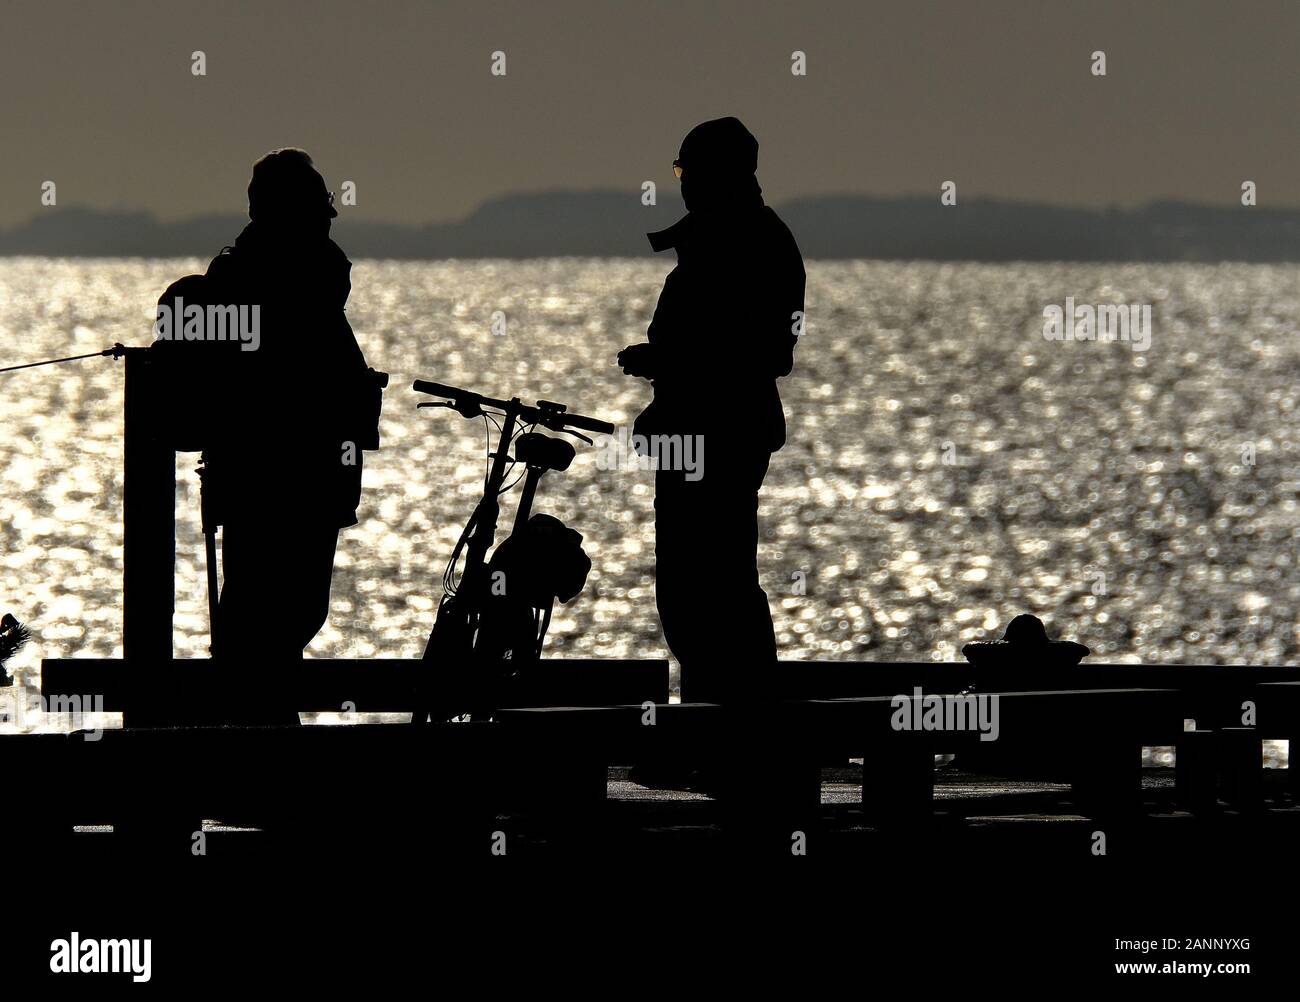 Las personas en silueta y el sol brillante en el extremo de un muelle junto al mar. Foto de stock